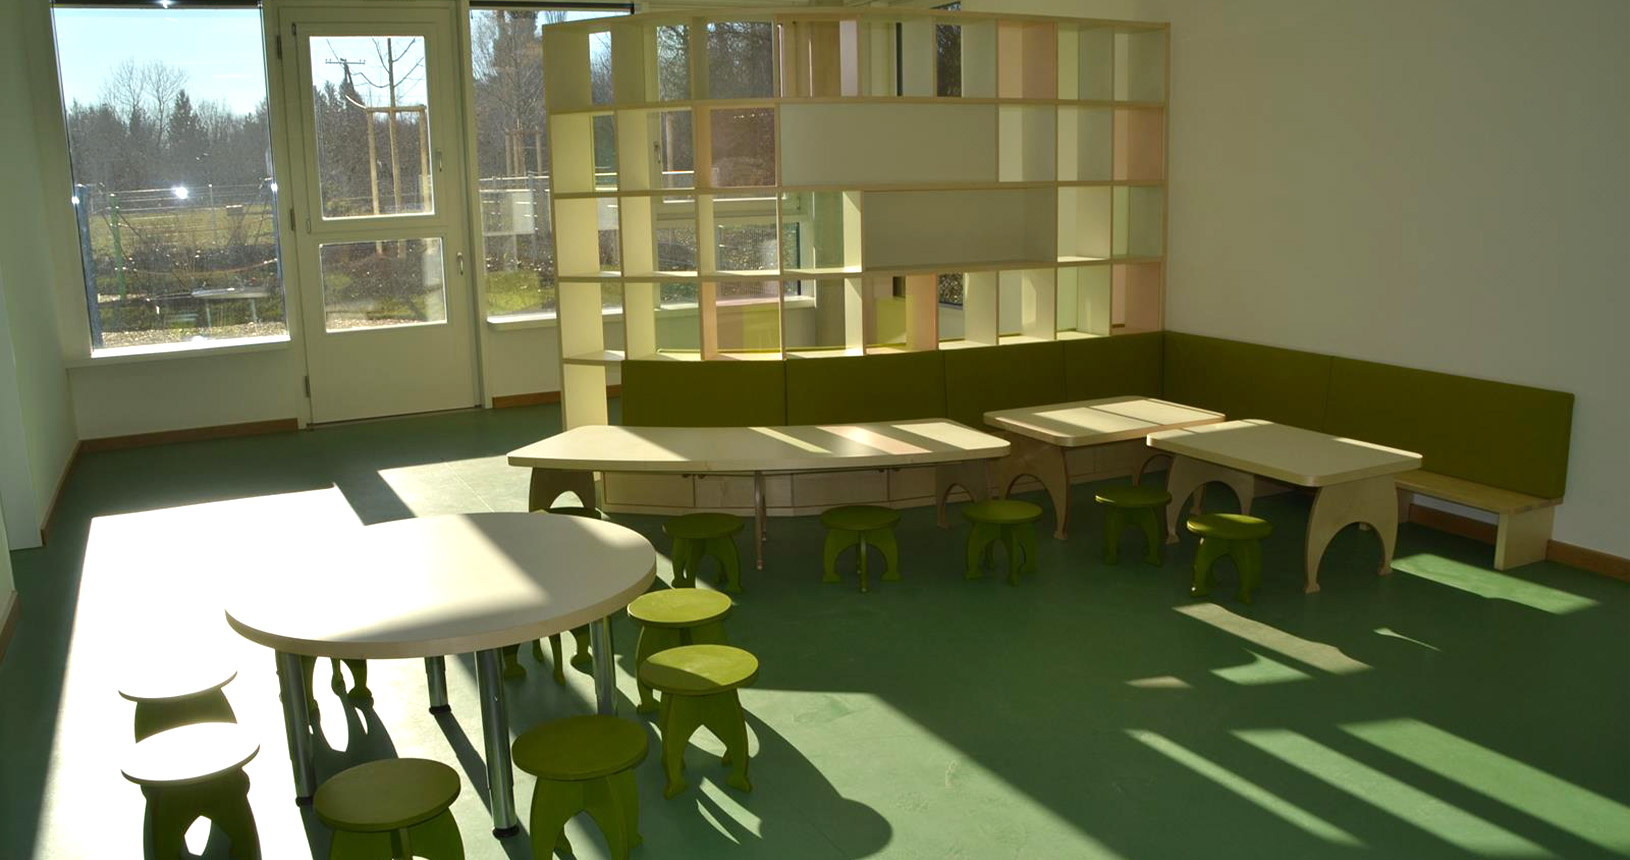 Kindergartenraum mit Regalsystem und kleinen Tischen und Stühlen